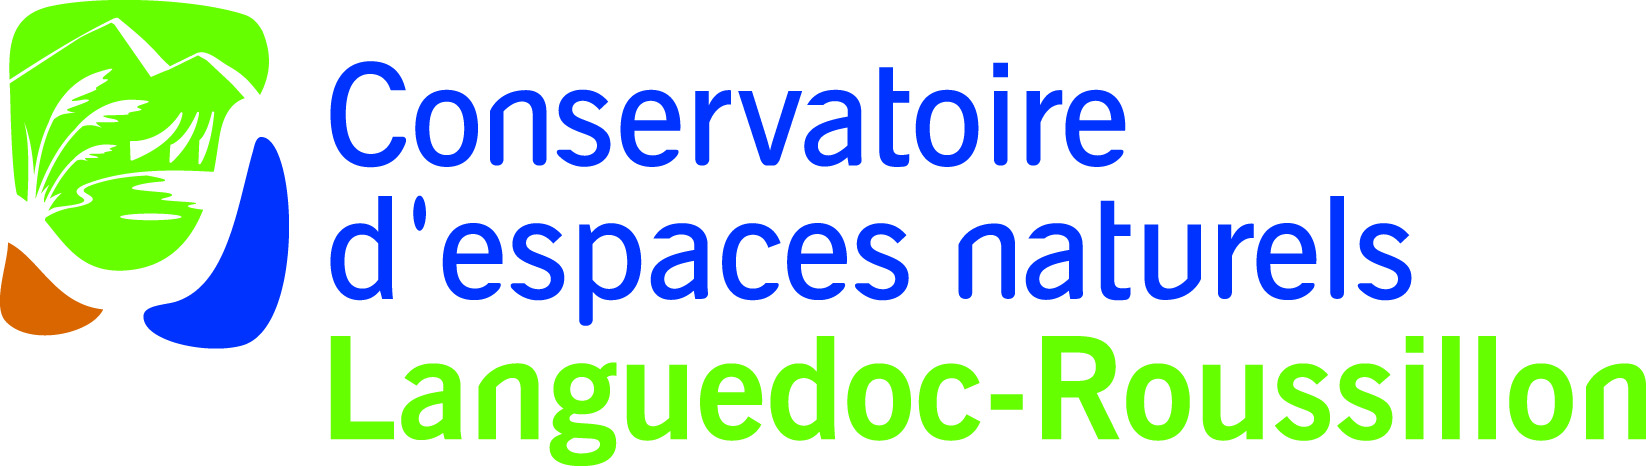 Concervatoire des Espaces Naturels Languedoc-Roussillon 